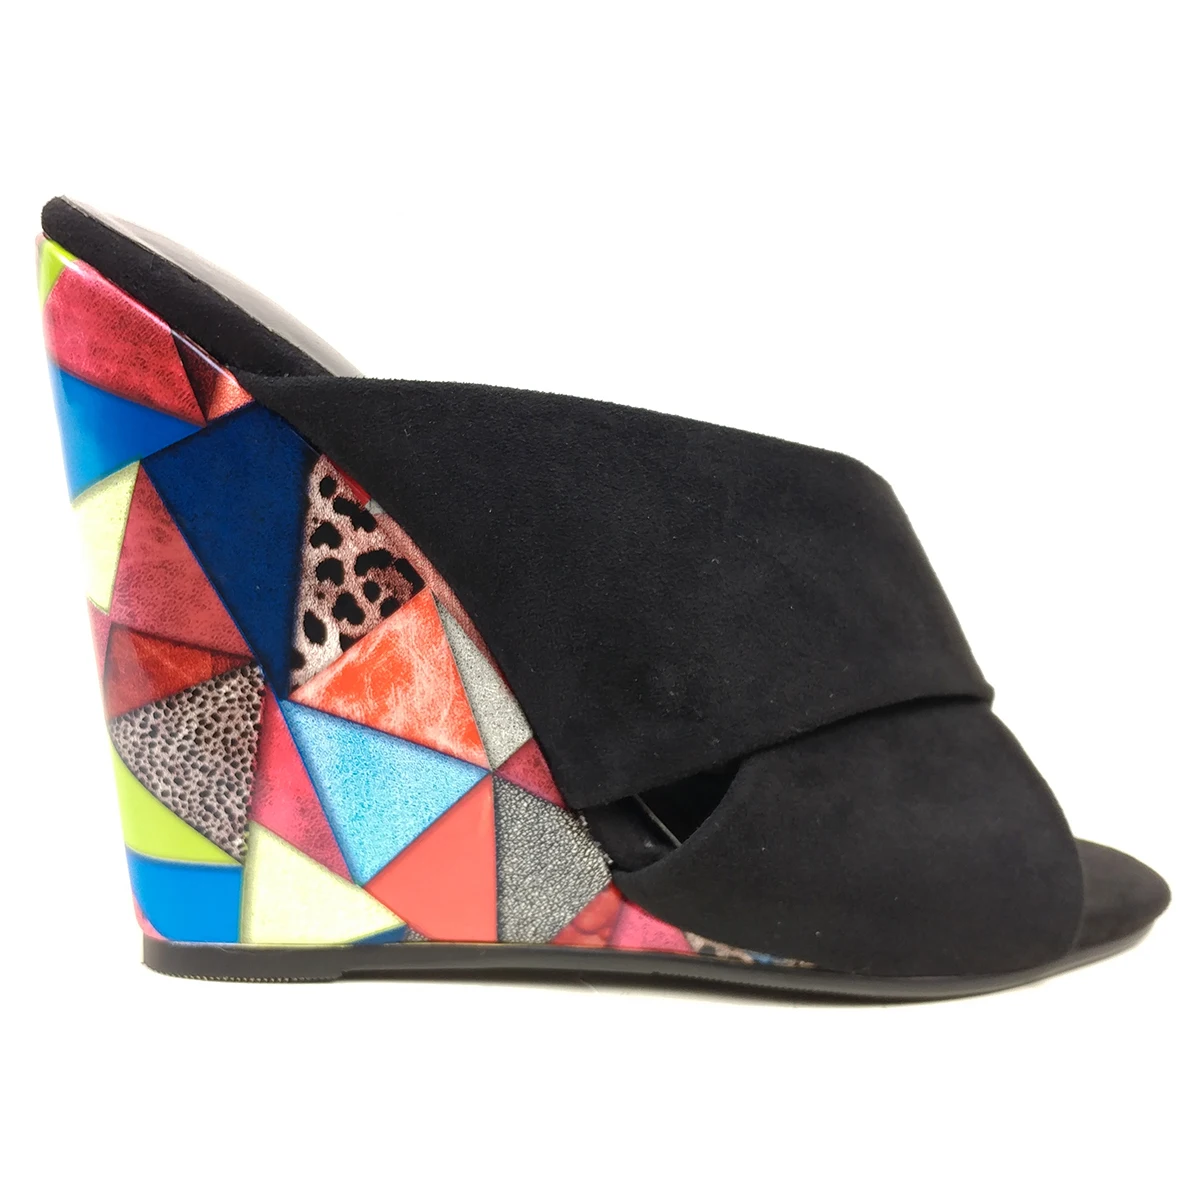 Aimirlly/Летняя женская обувь; туфли без задника на высоком каблуке; женские босоножки на танкетке; тапочки с цветочным узором; повседневная черная обувь из искусственной замши